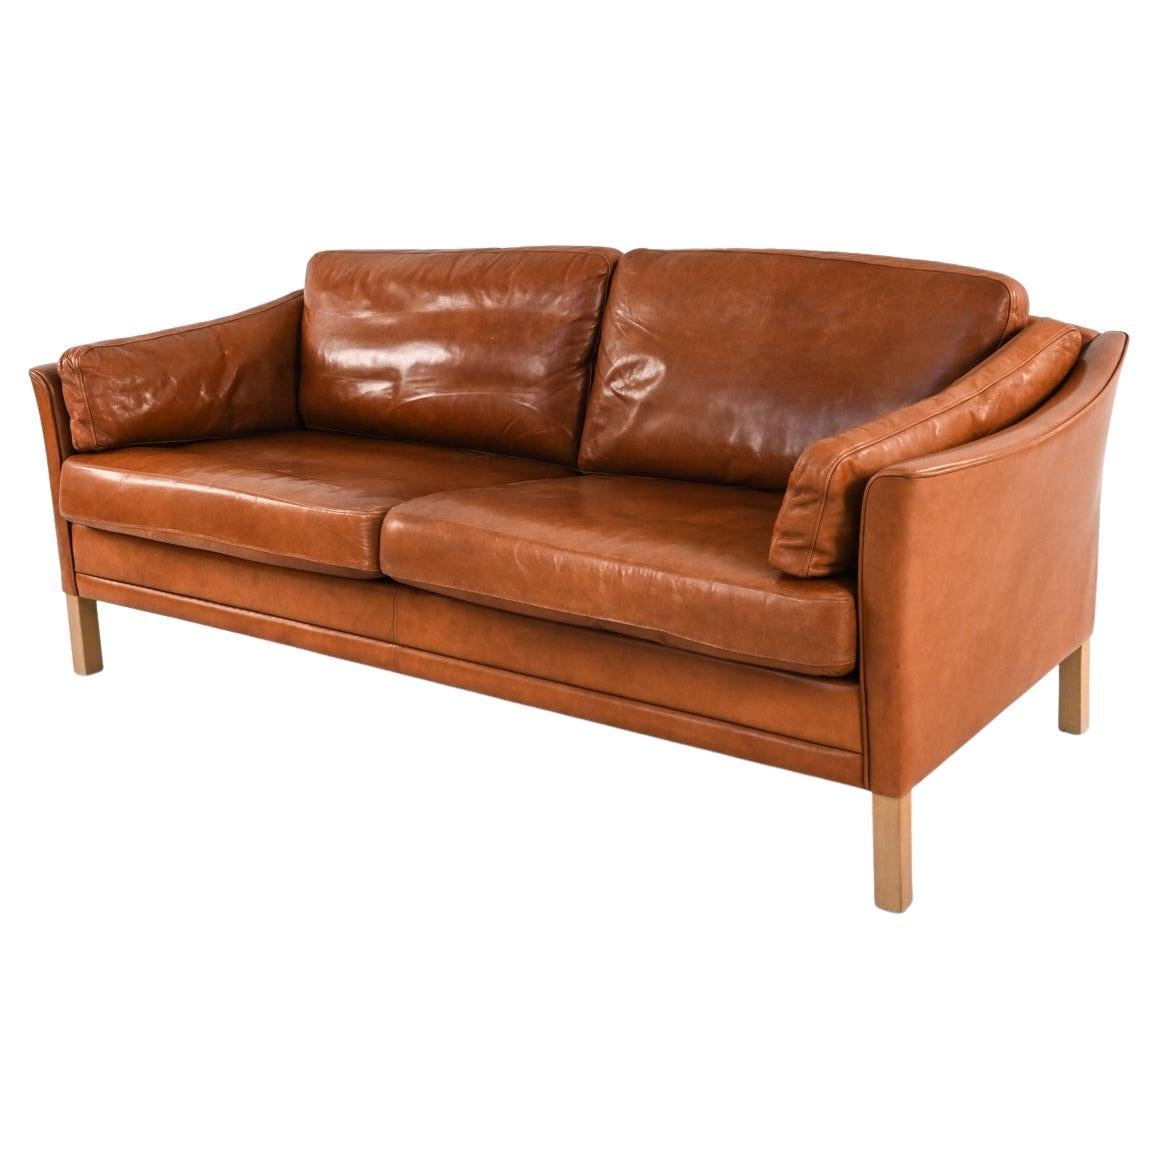 Mogens Hansen MH535 Danish Leather Sofa For Sale at 1stDibs